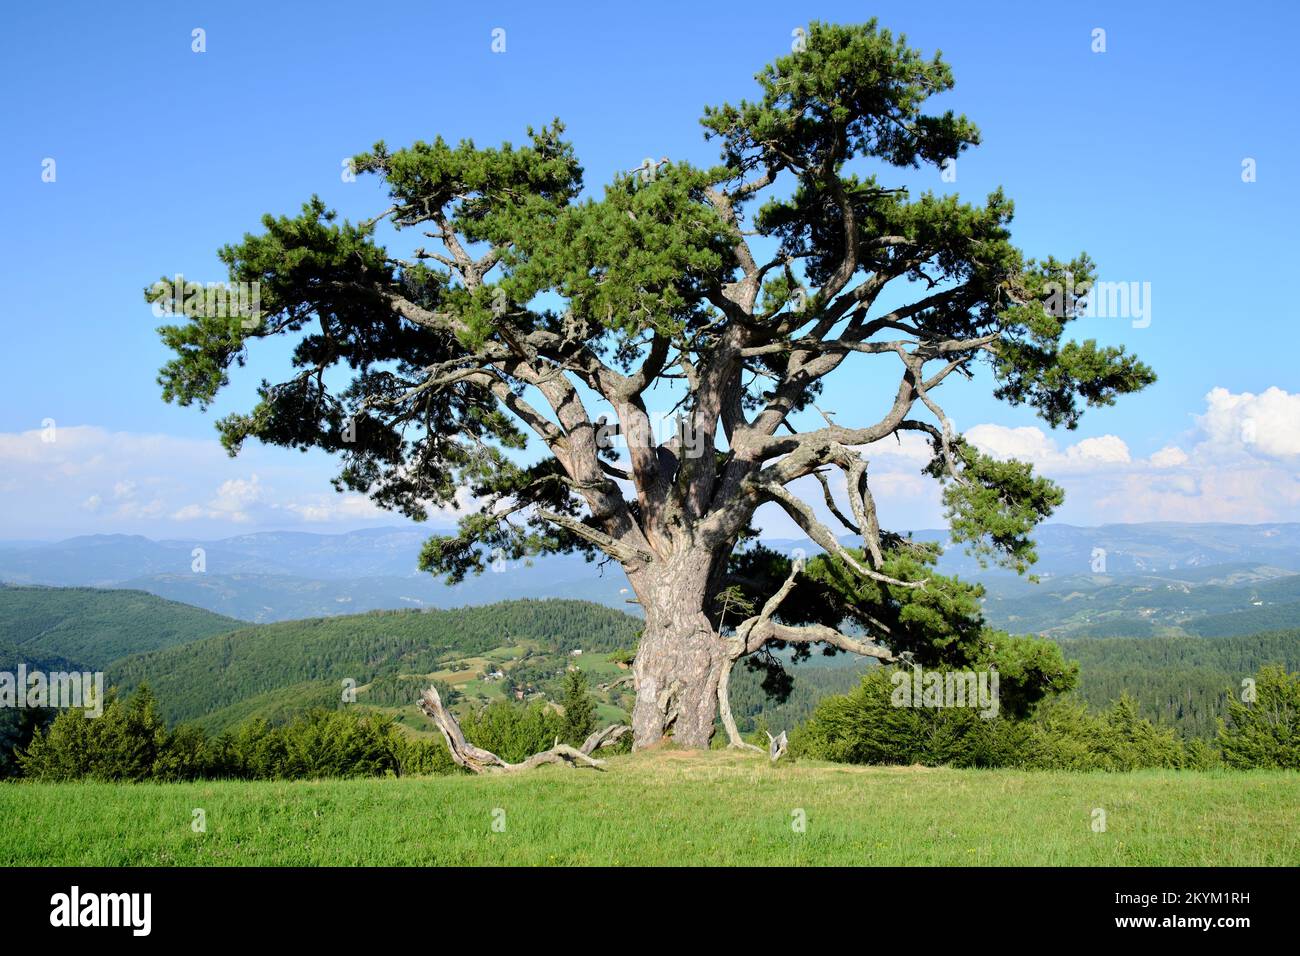 old pine tree 'Sveti Bor' in mountain of Serbia, Kamena Gora Stock Photo